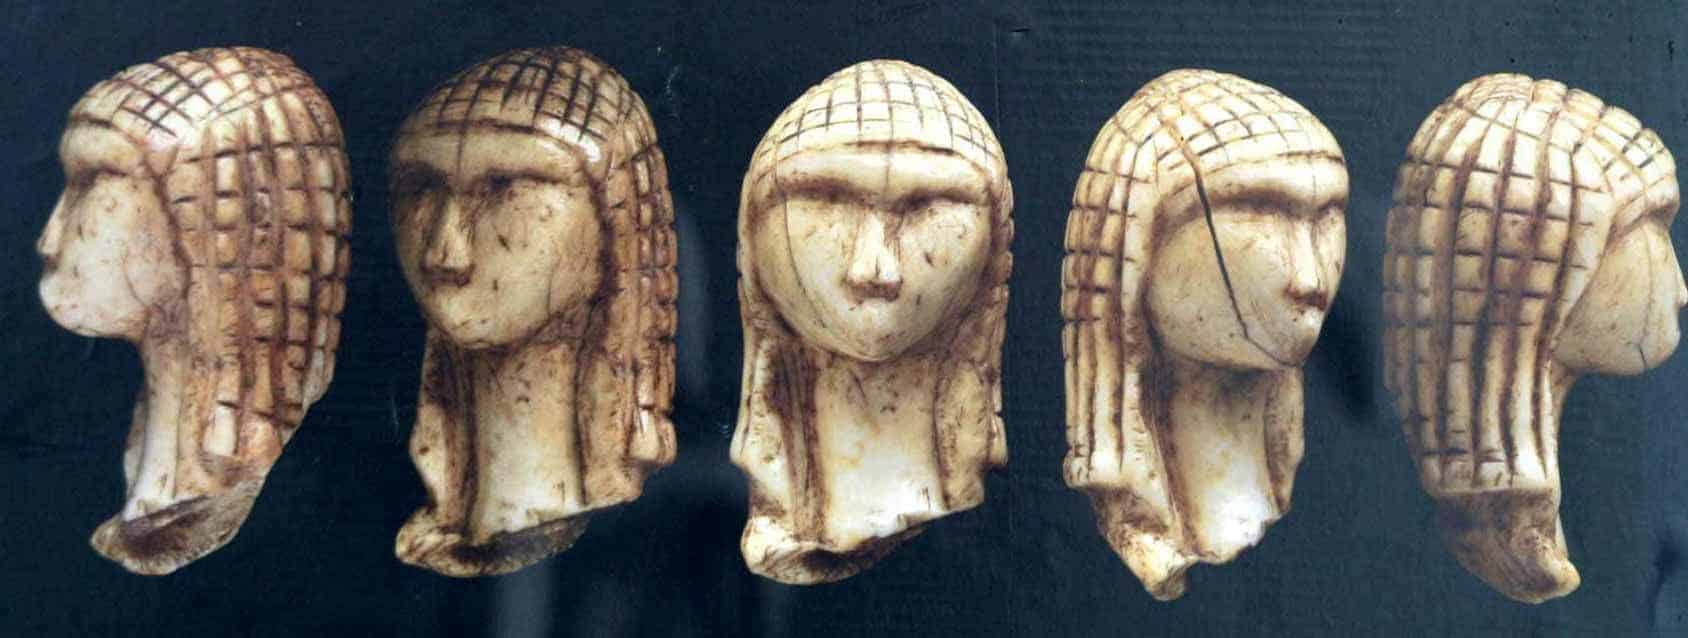 ancient human face